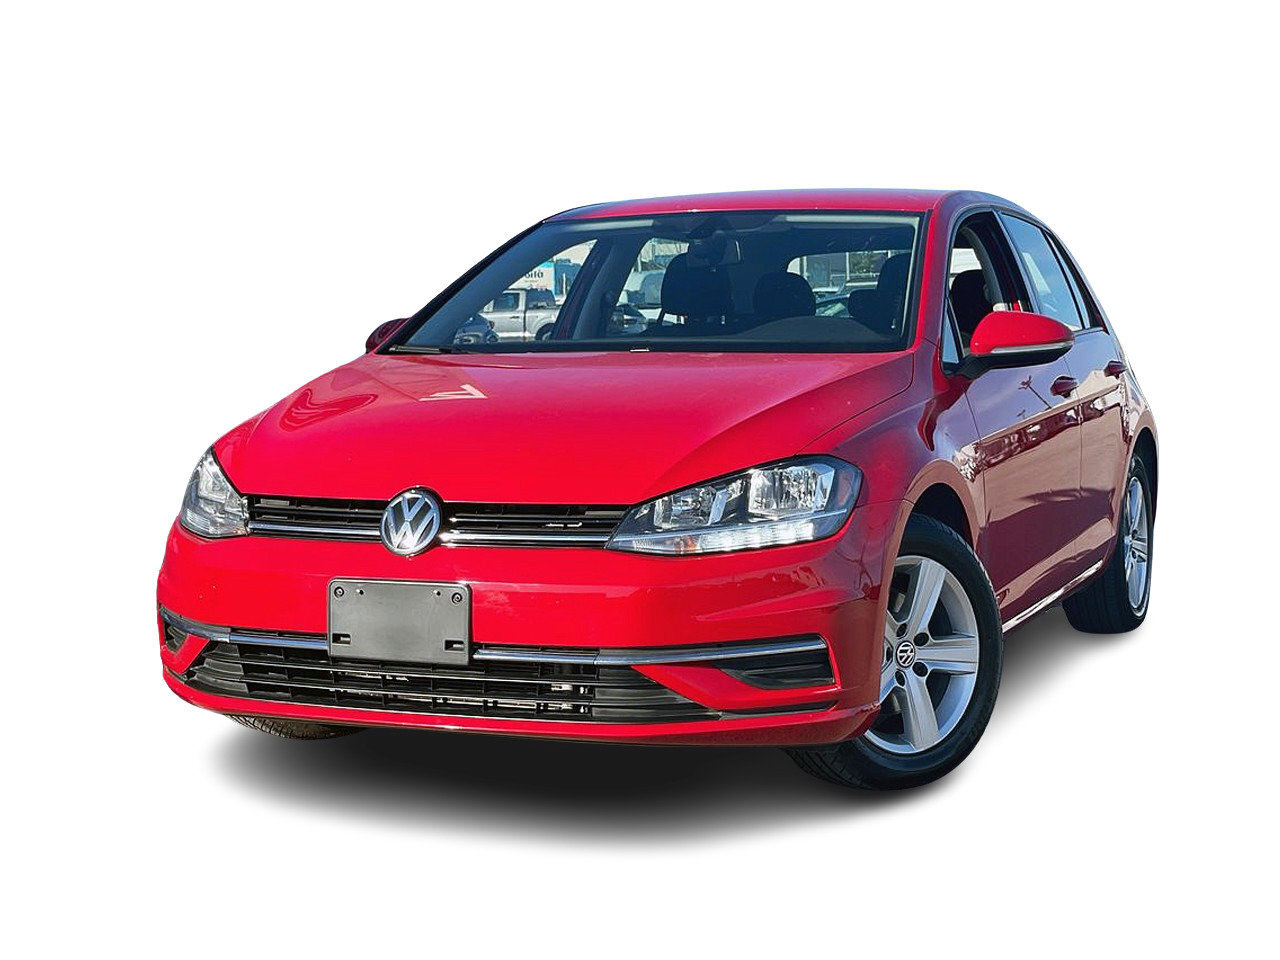 2021 Volkswagen Golf 1.4T Comfortline 147 HP | Smart Phone Ready | Navi